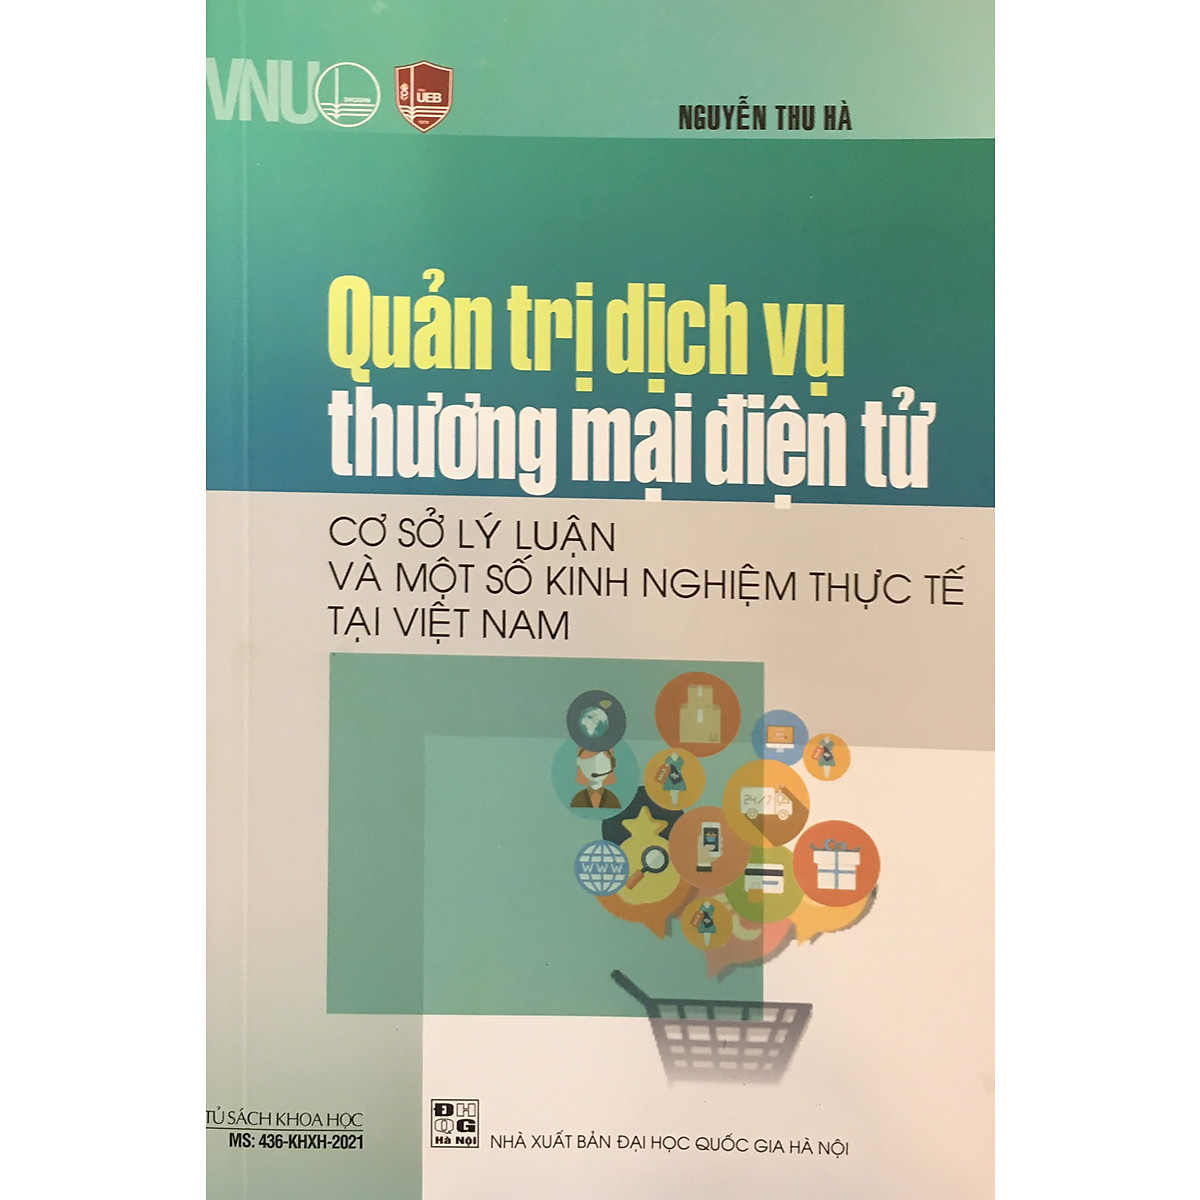 Quản trị dịch vụ thương mại điện tử - Cơ sở lý luận và một số kinh nghiệm thực tế tại Việt Nam